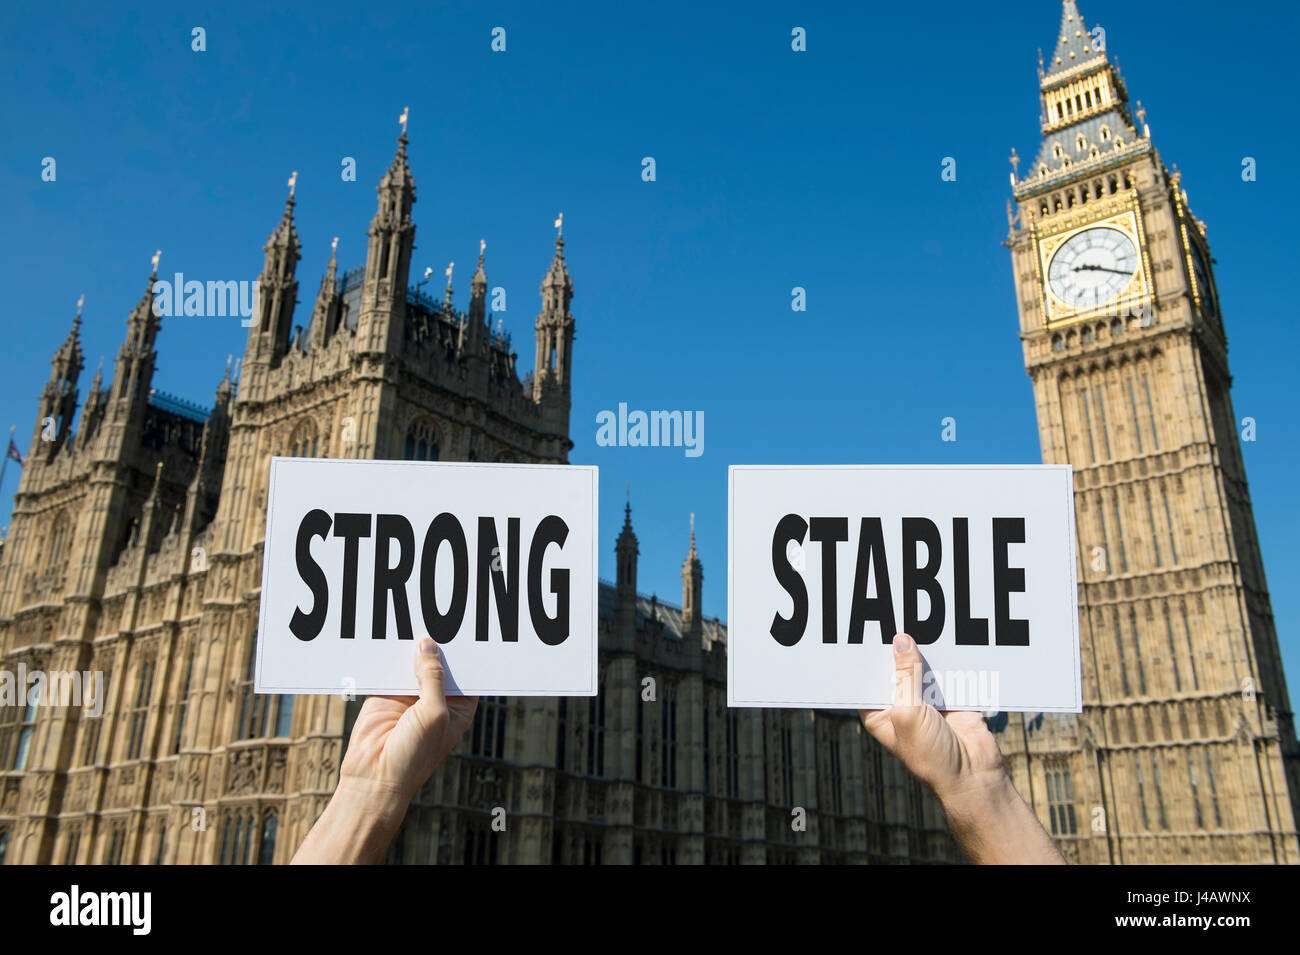 Hände halten protest Zeichen mit der Meldung "Starke, stabile" unter Bezugnahme auf das Vereinigte Königreich und seine Beziehung zu Europa bei Austritt Stockfoto